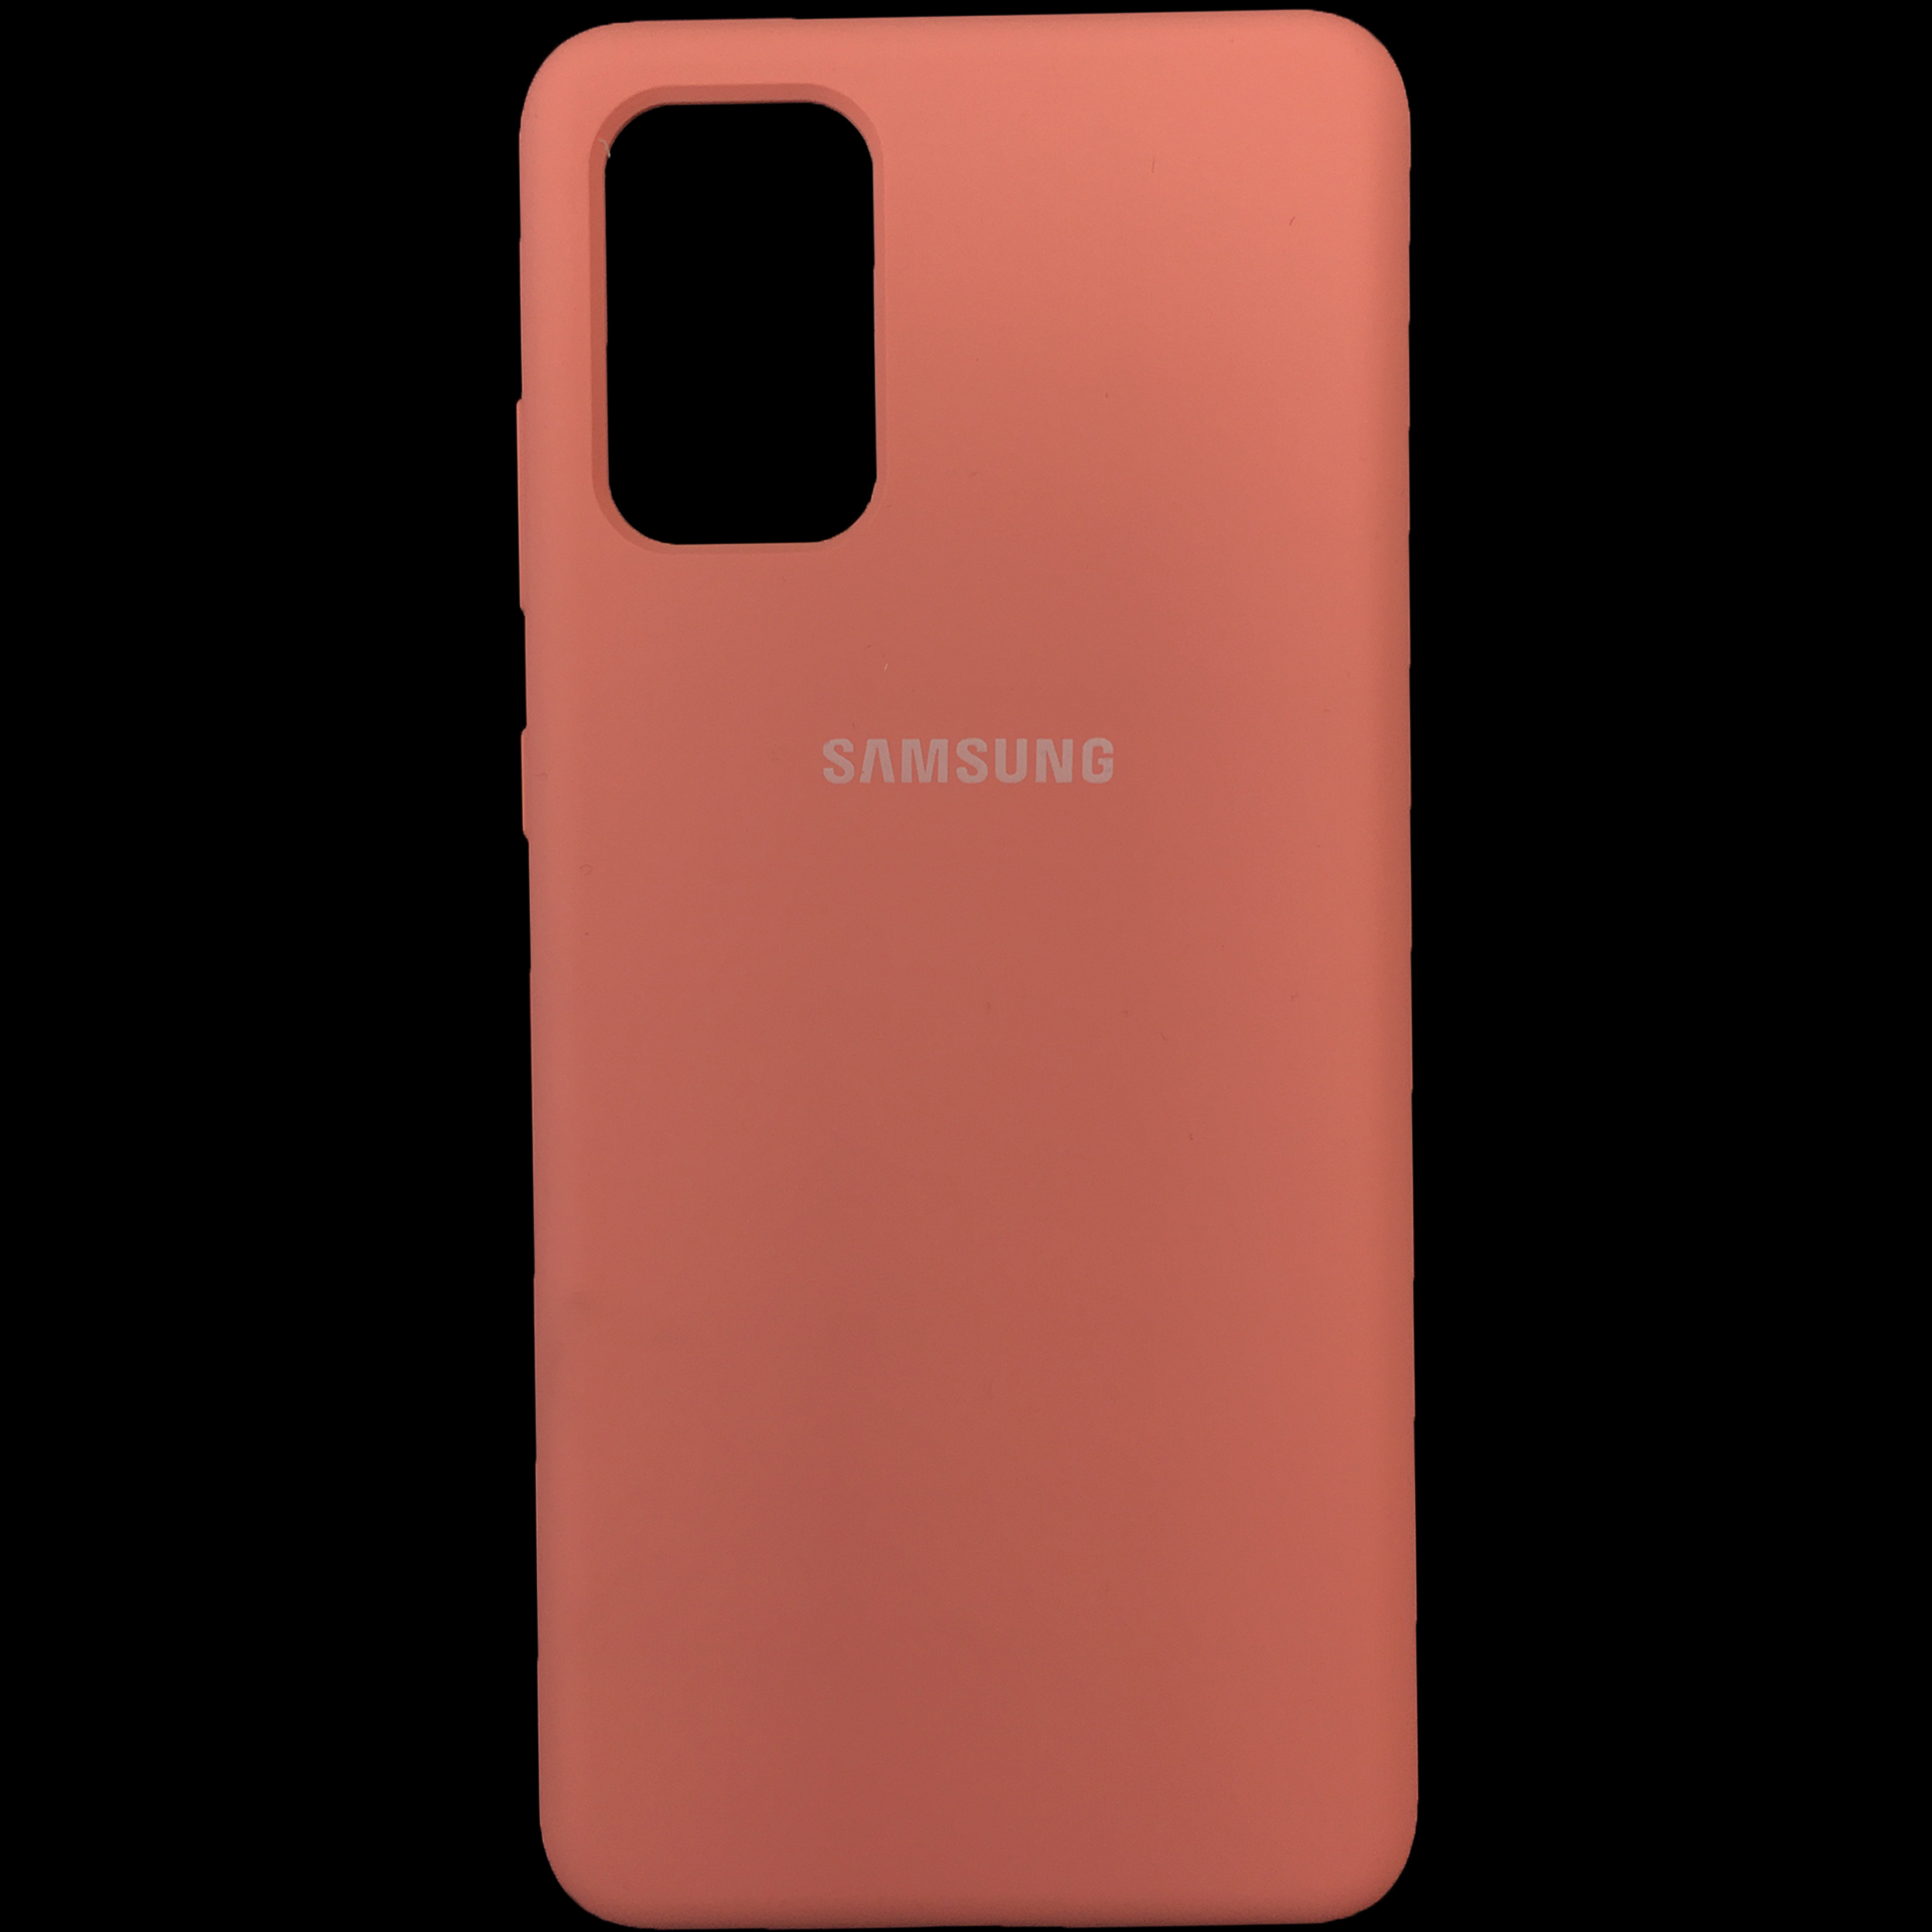 کاور کد S20 مناسب برای گوشی موبایل سامسونگ Galaxy S20 plus                     غیر اصل